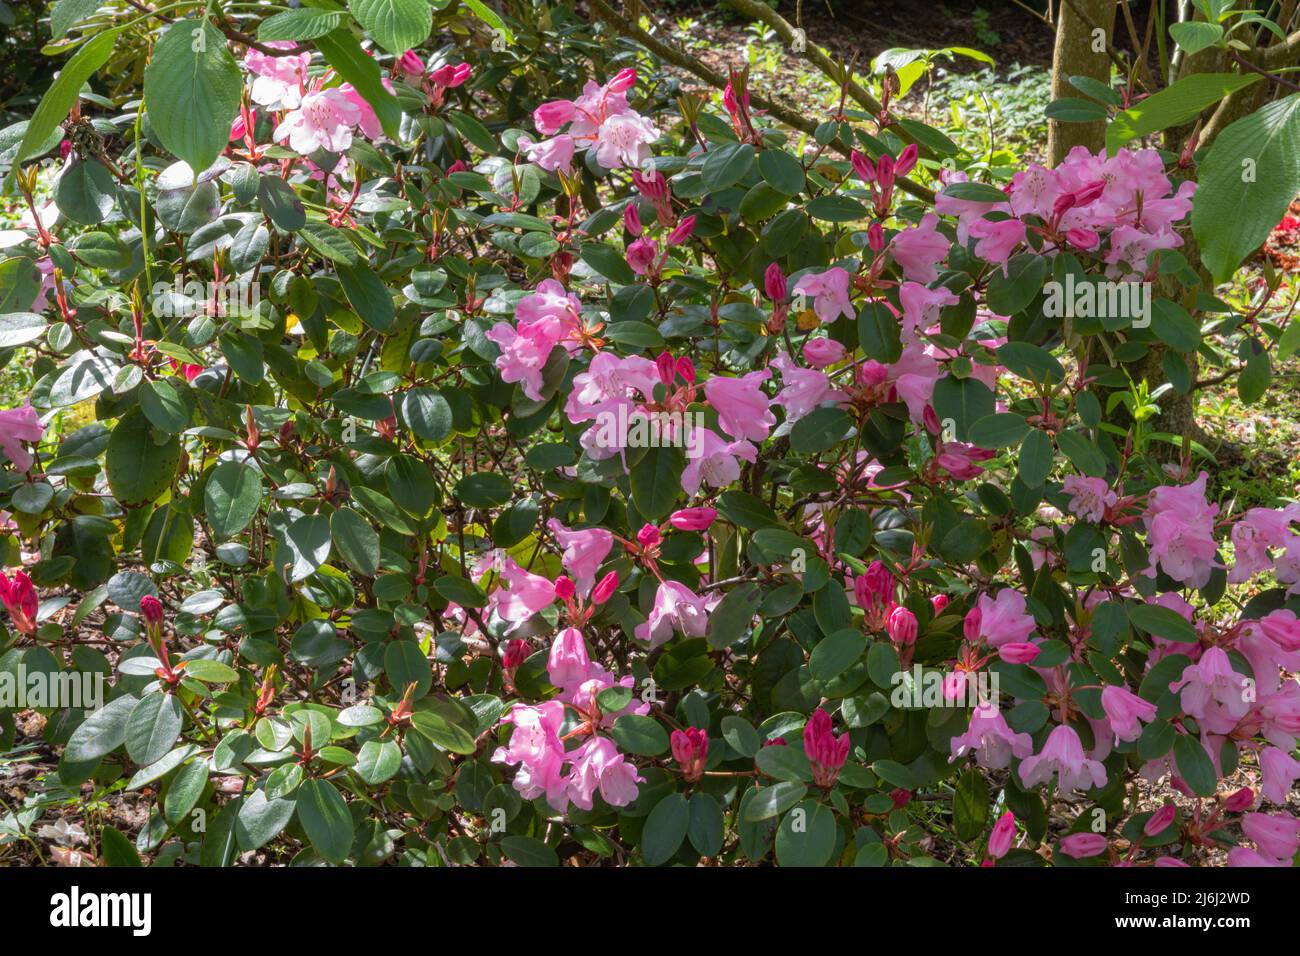 Grupo de brocado de rododendros, un arbusto duro con brotes rojos profundos que se abren a una flor rosa peachy Foto de stock